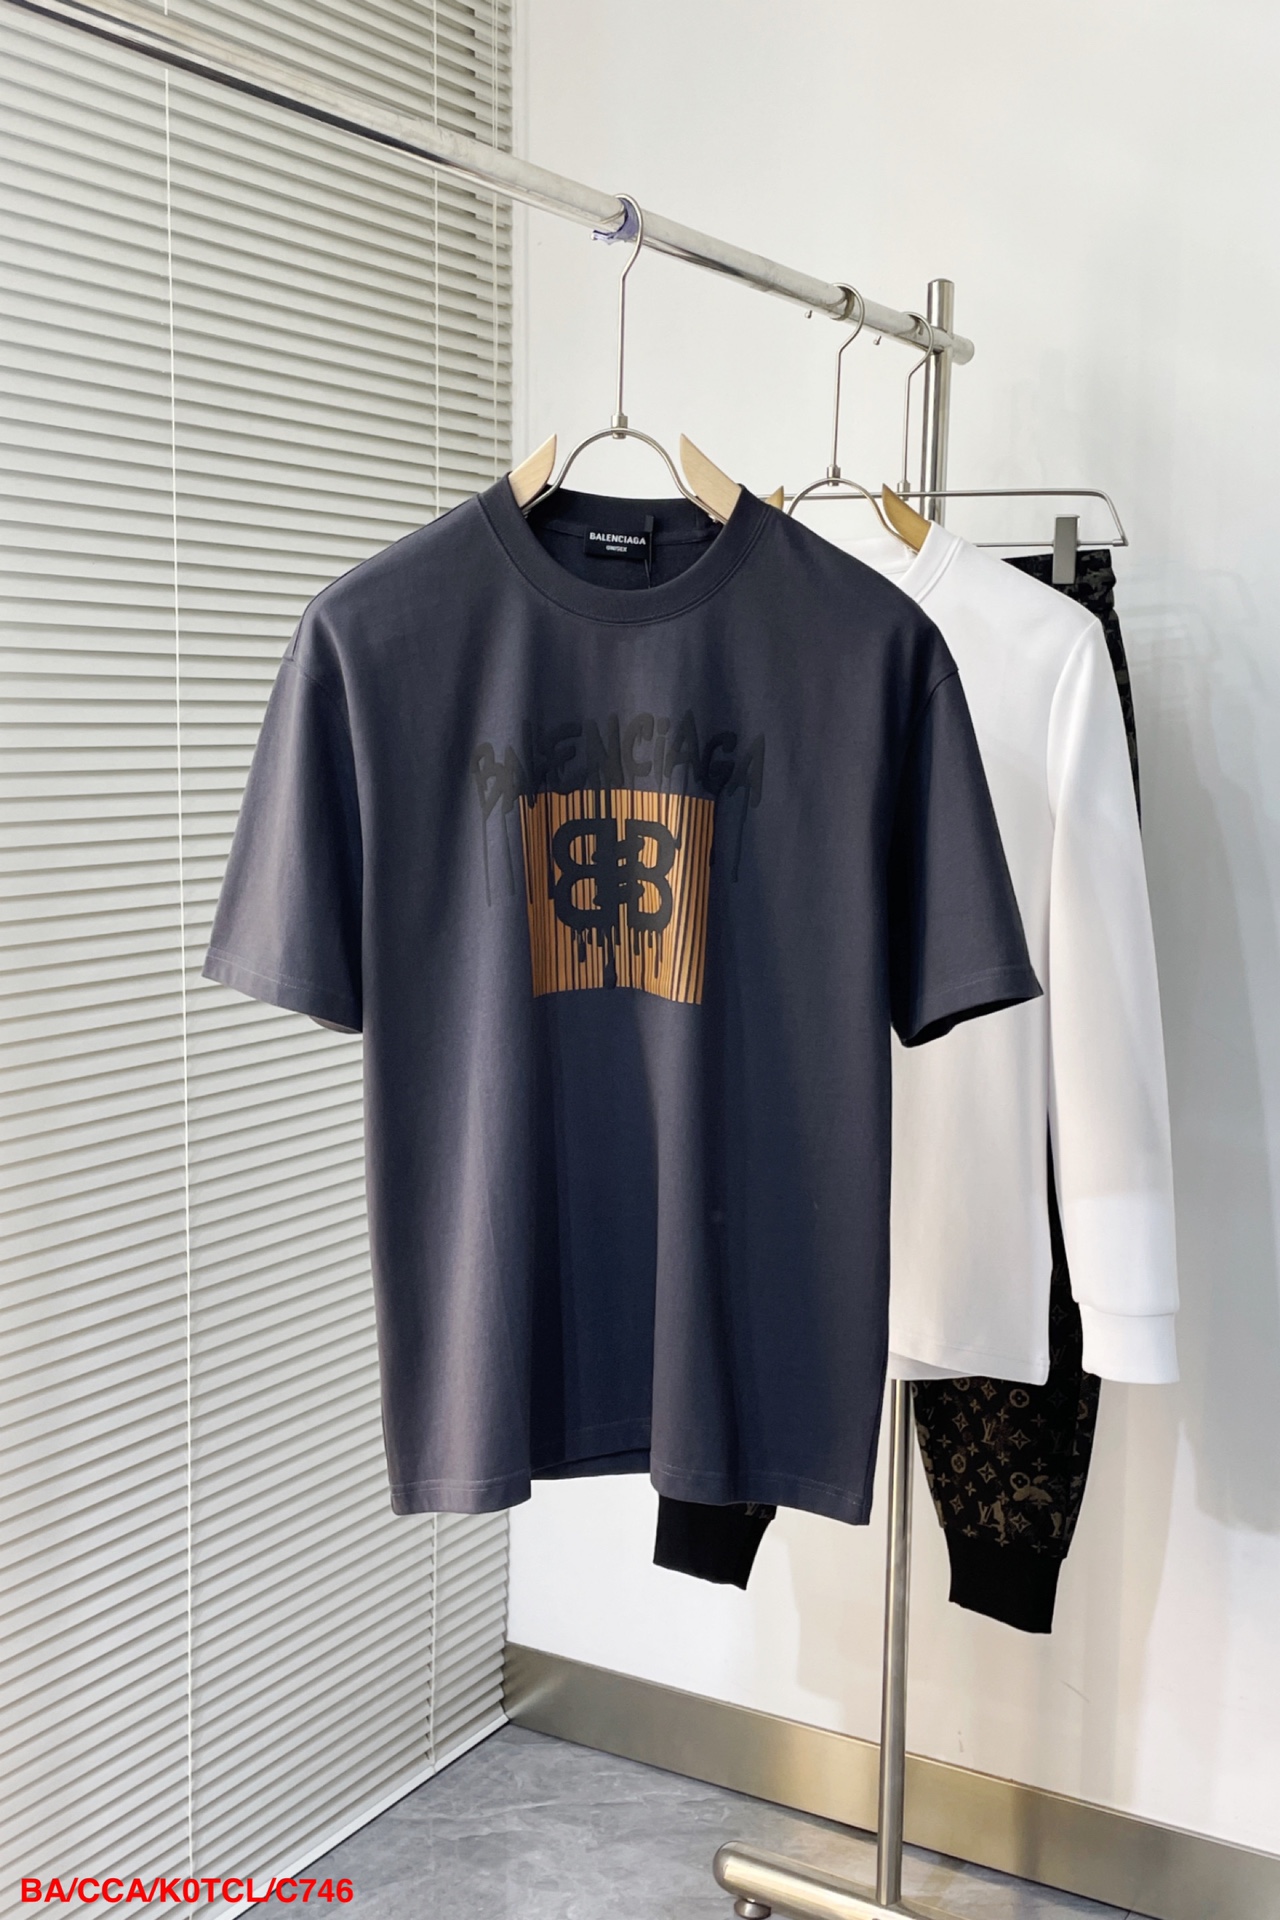 Balenciaga Kleding T-Shirt Unisex Lente/Zomercollectie Korte mouw